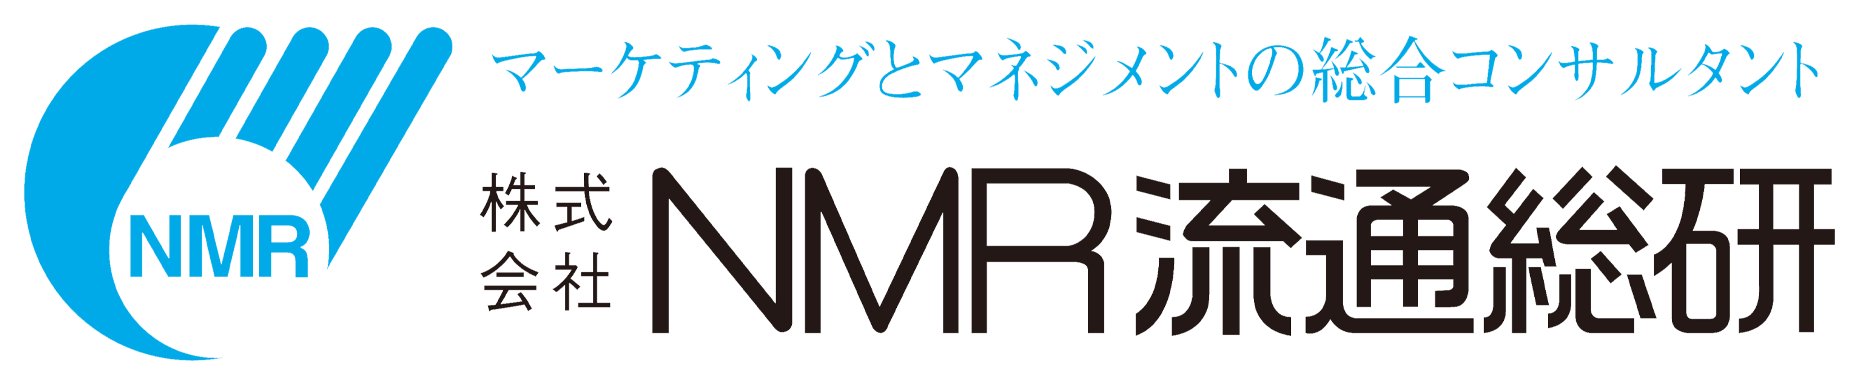 株式会社NMR流通総研